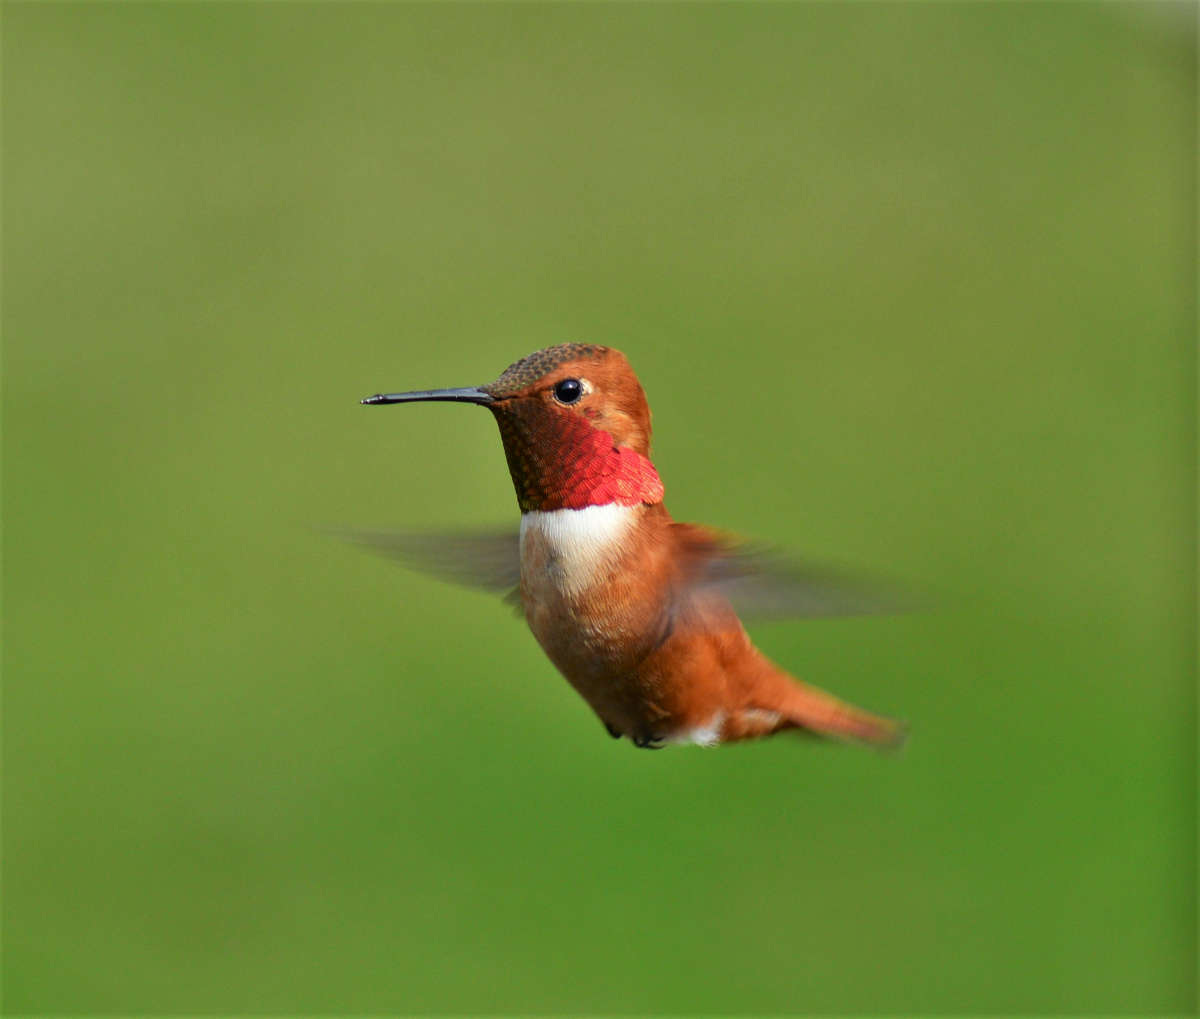 un colibrí de color rojo y marrón parece estar suspendido en el aire mientras bate sus alas a toda velocidad